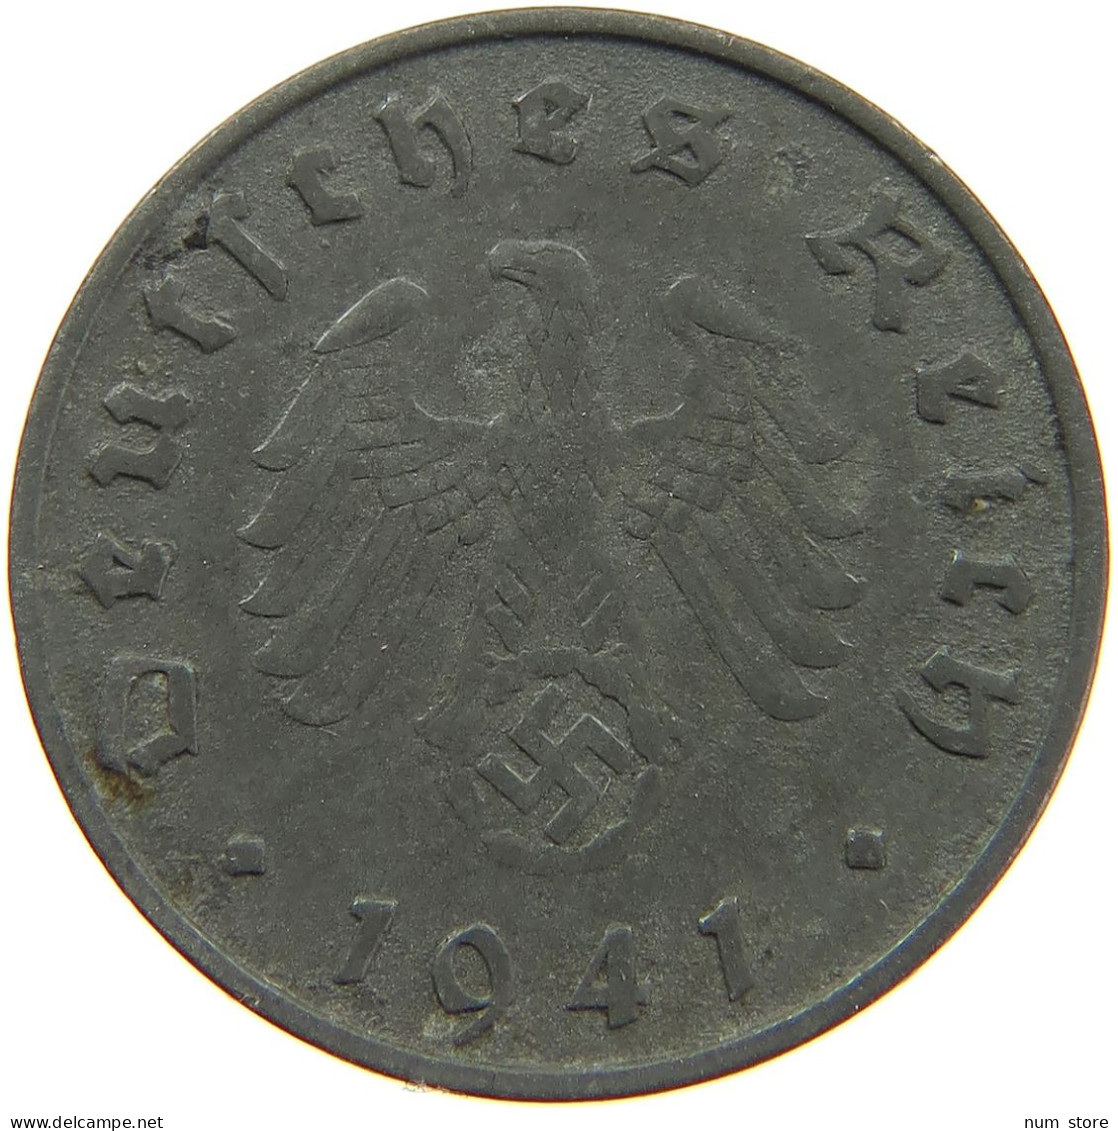 GERMANY 10 REICHSPFENNIG 1941 G #s088 0115 - 10 Reichspfennig